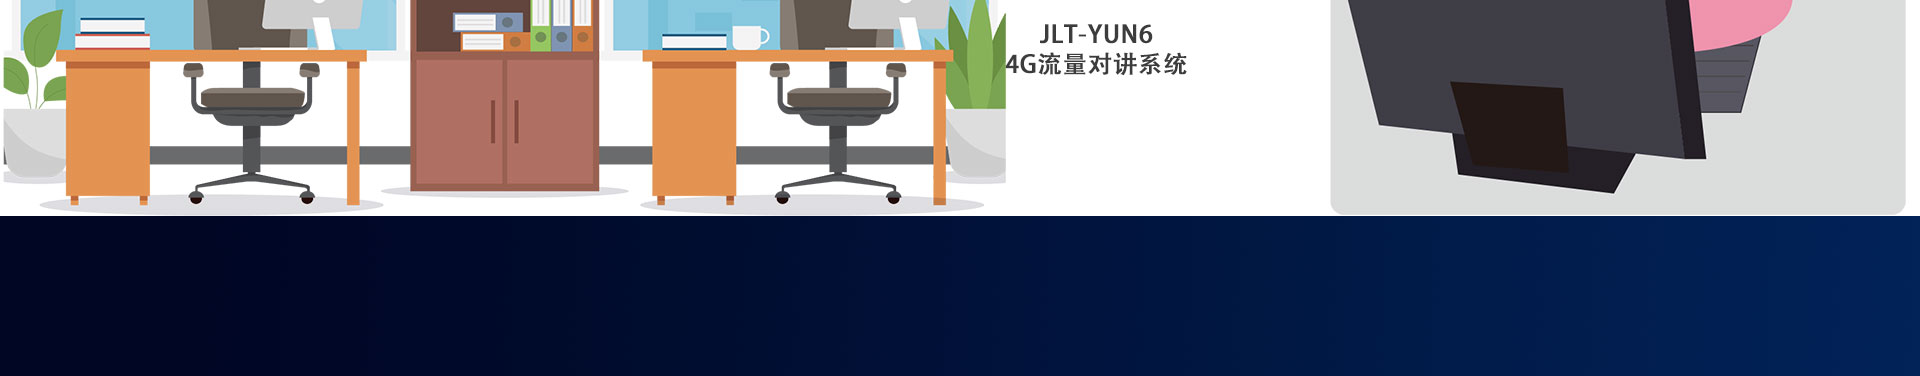 JLT-YUN6-4G流量对讲系统详情页_08.jpg